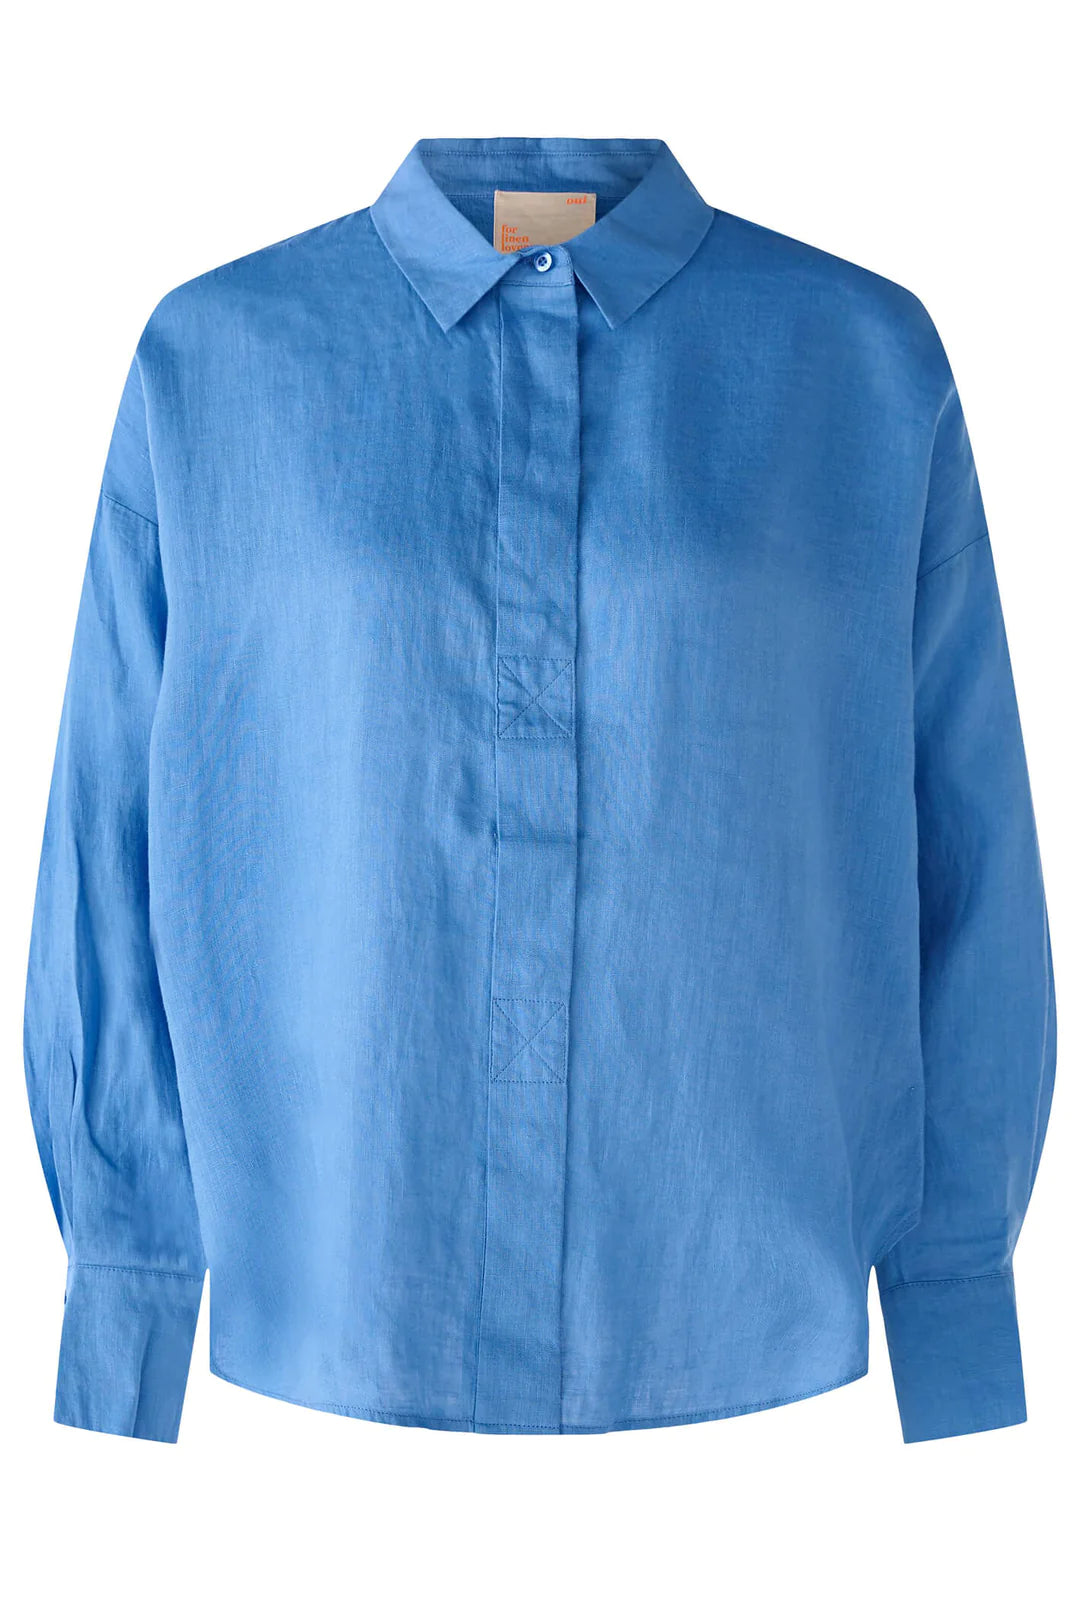 Oui Blue Linen Shirt